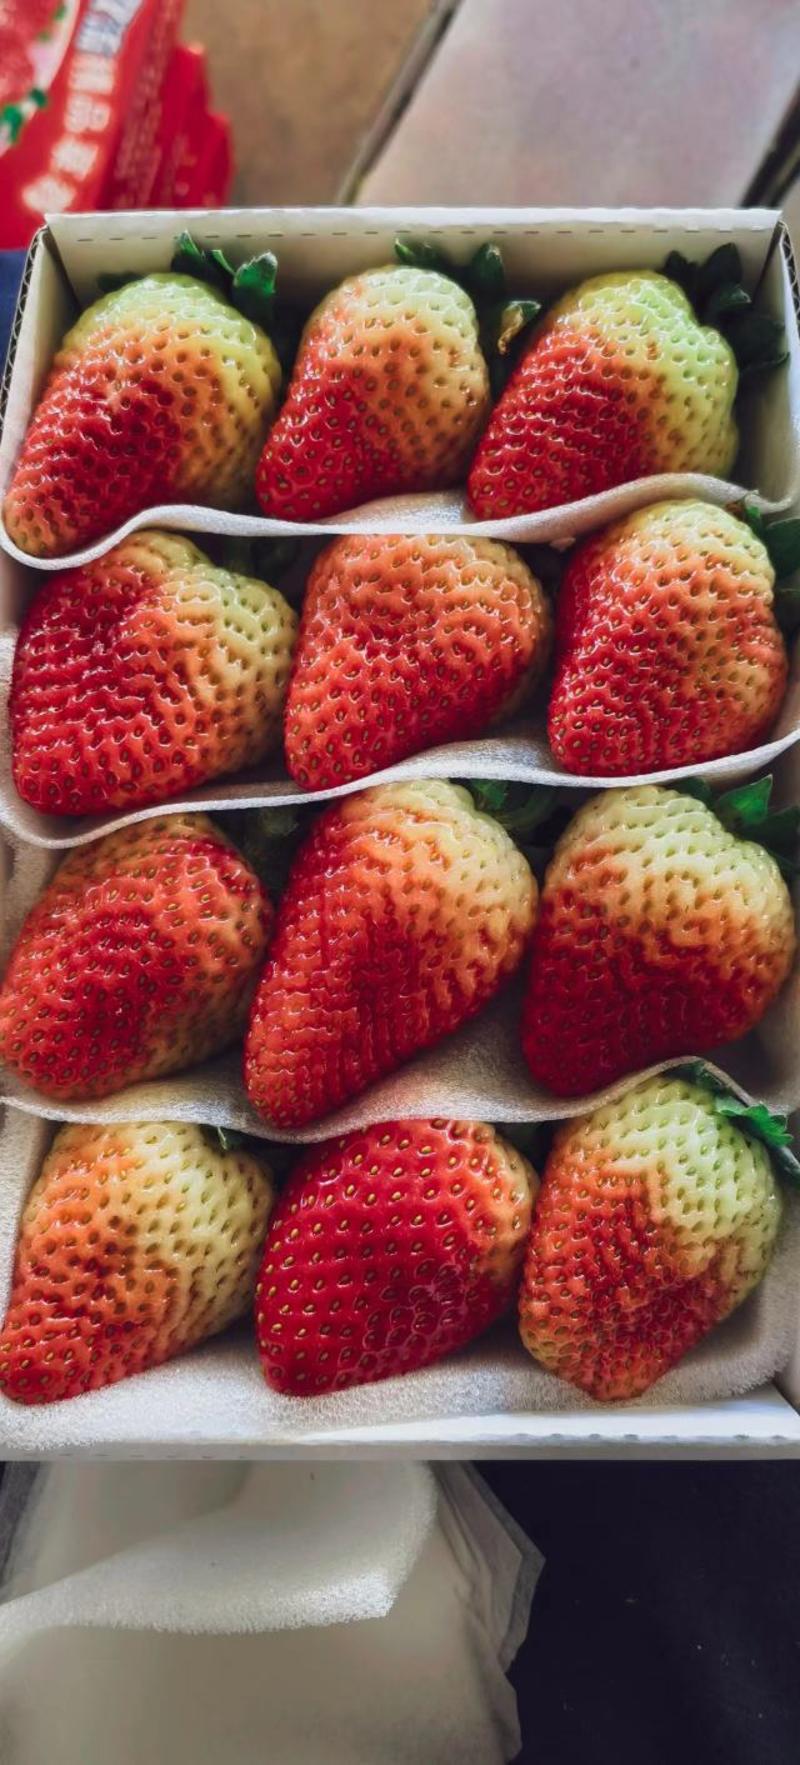 【精品】价格每日随行就市，一手货源夏季蒙特瑞草莓品质保证